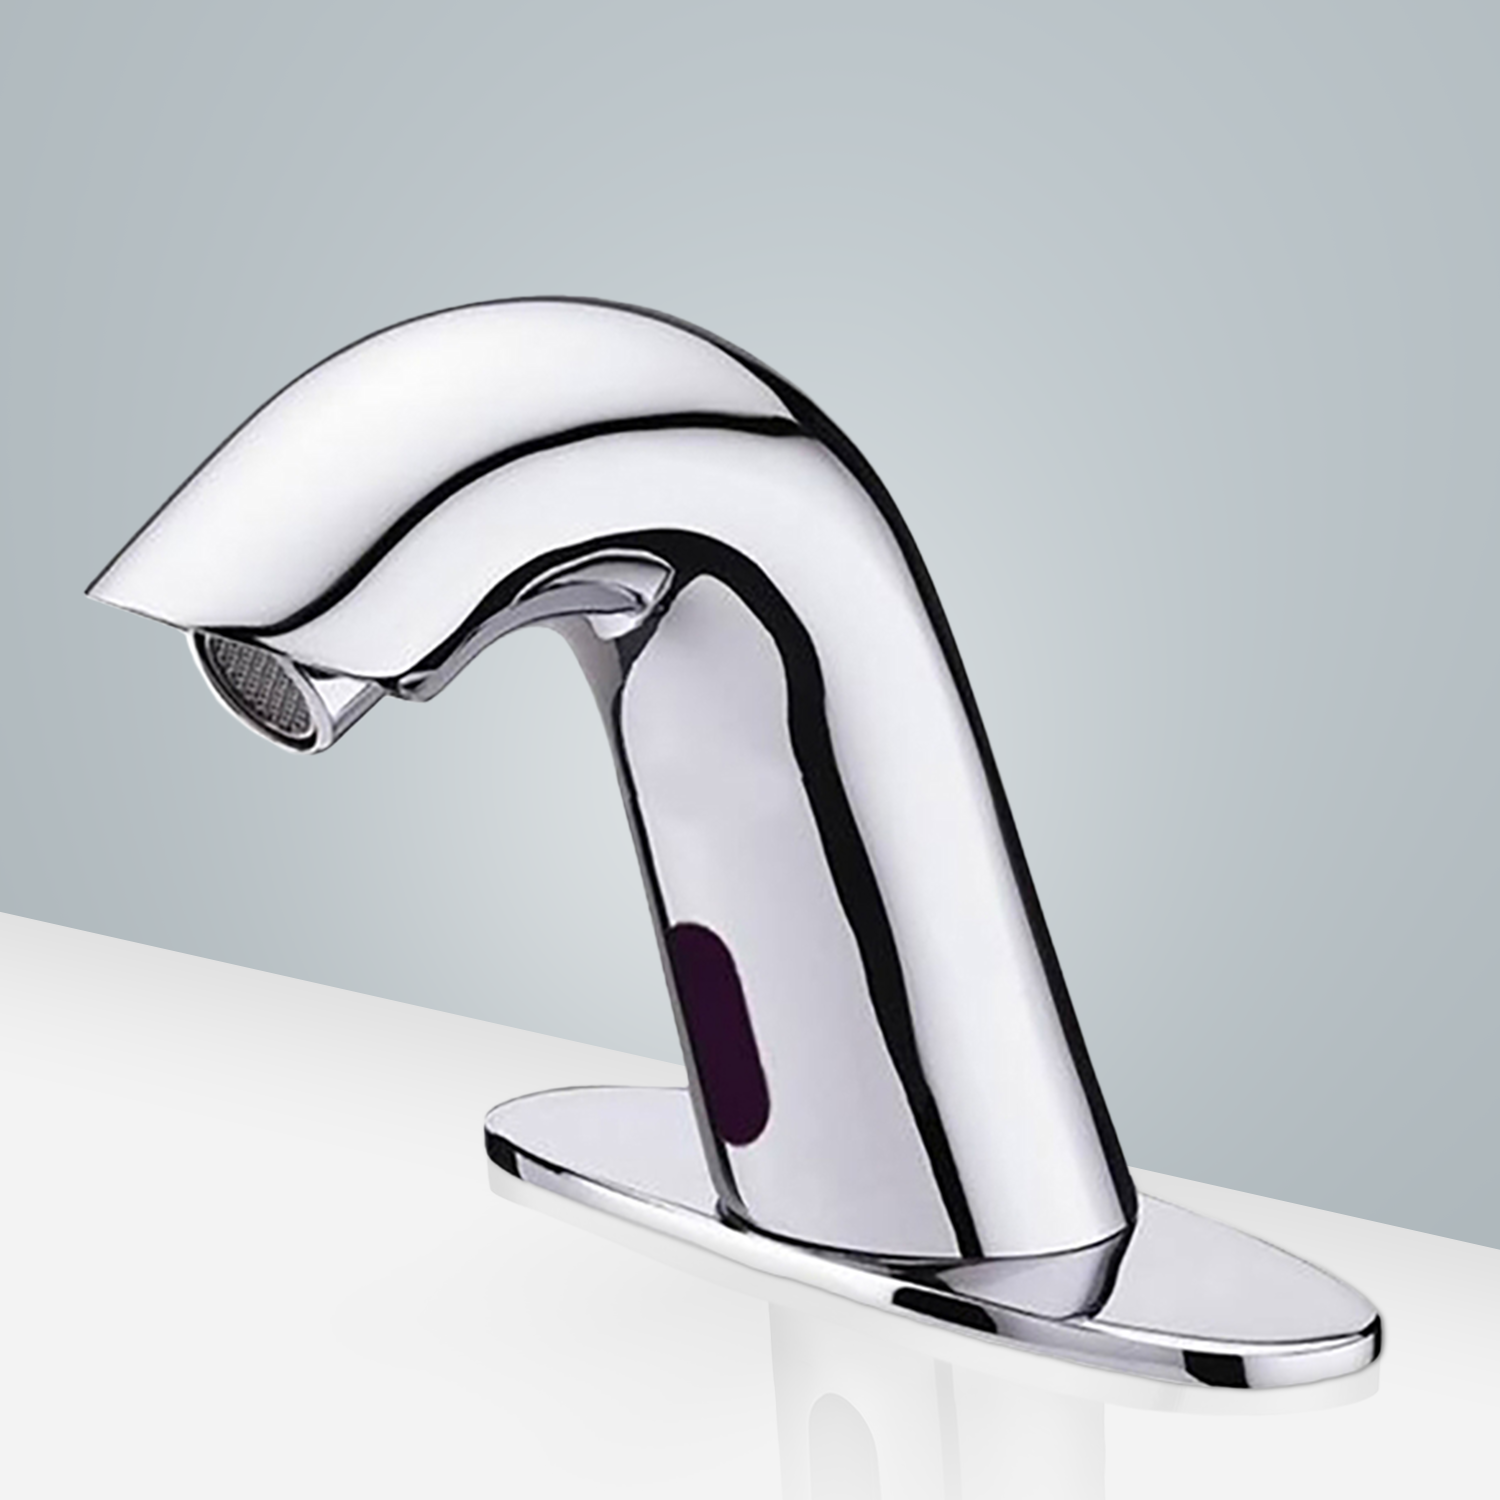 Fontana Conto Commercial Chrome Motion Sensor Bathroom Faucet